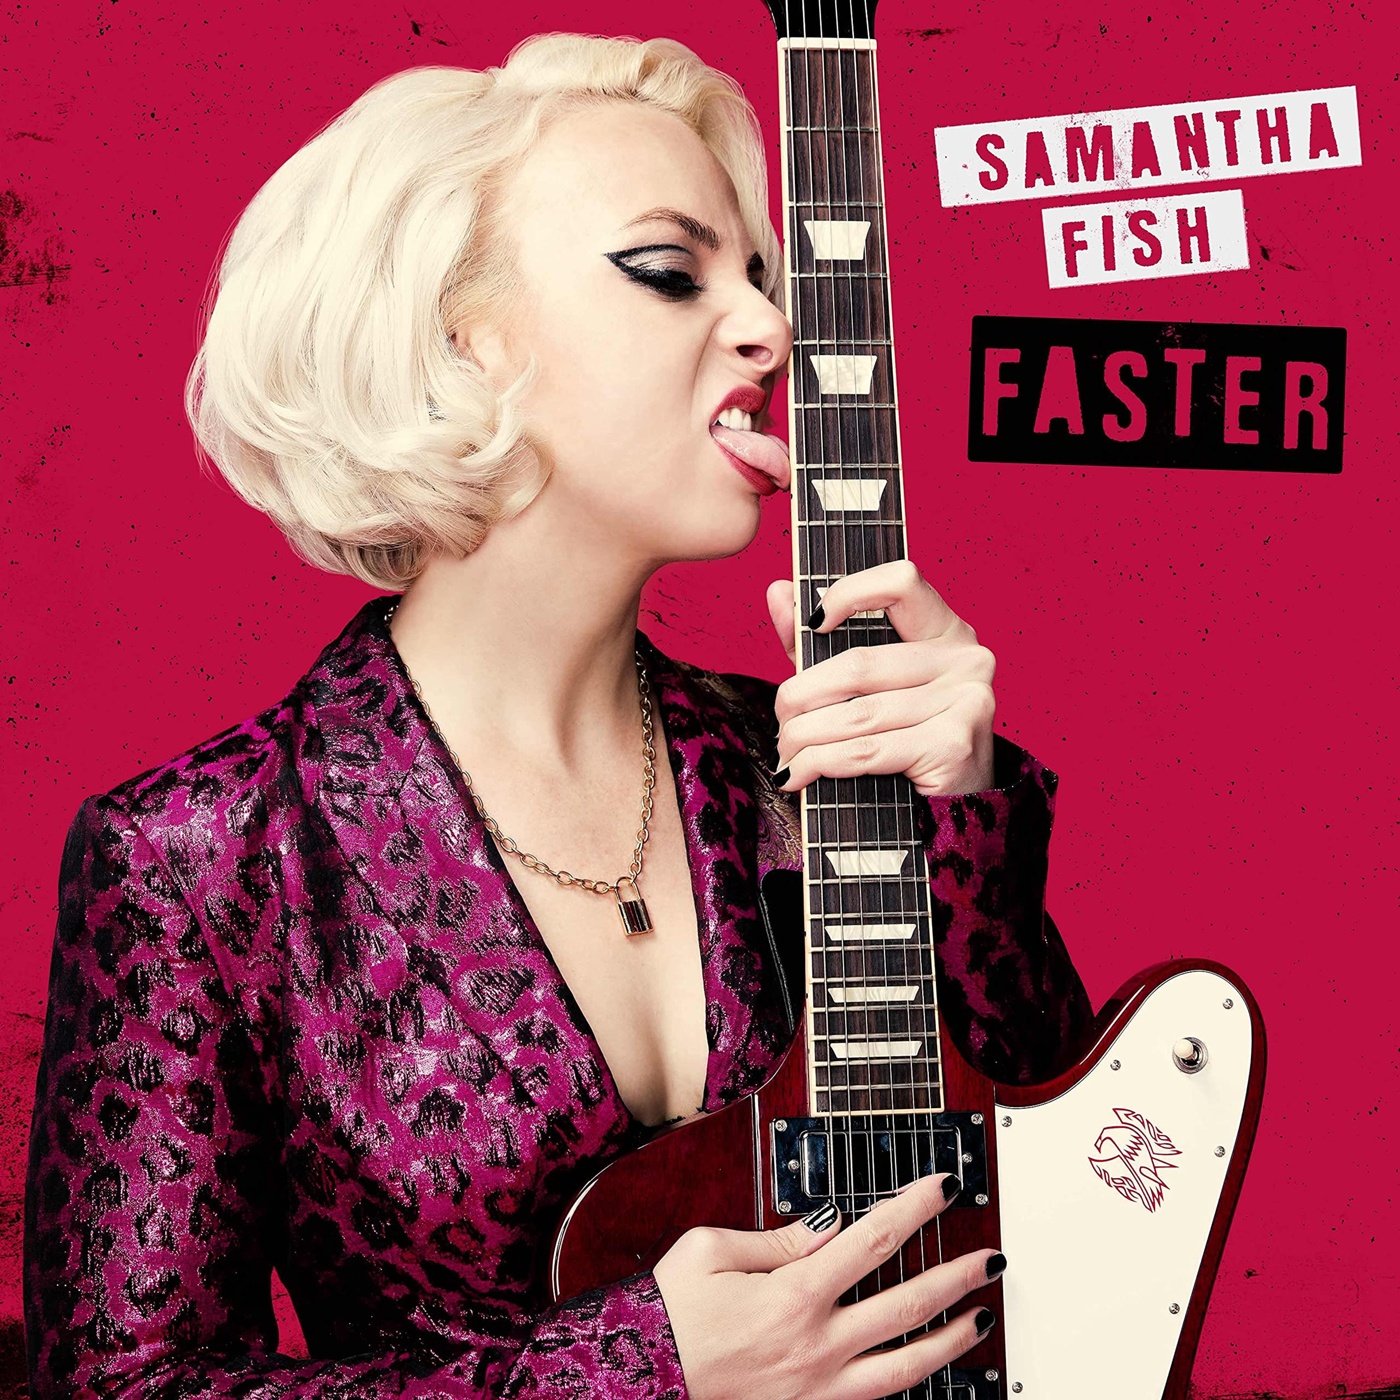 Samantha Fish: Faster CD купить в интернет магазине ЛегатоМюзик.